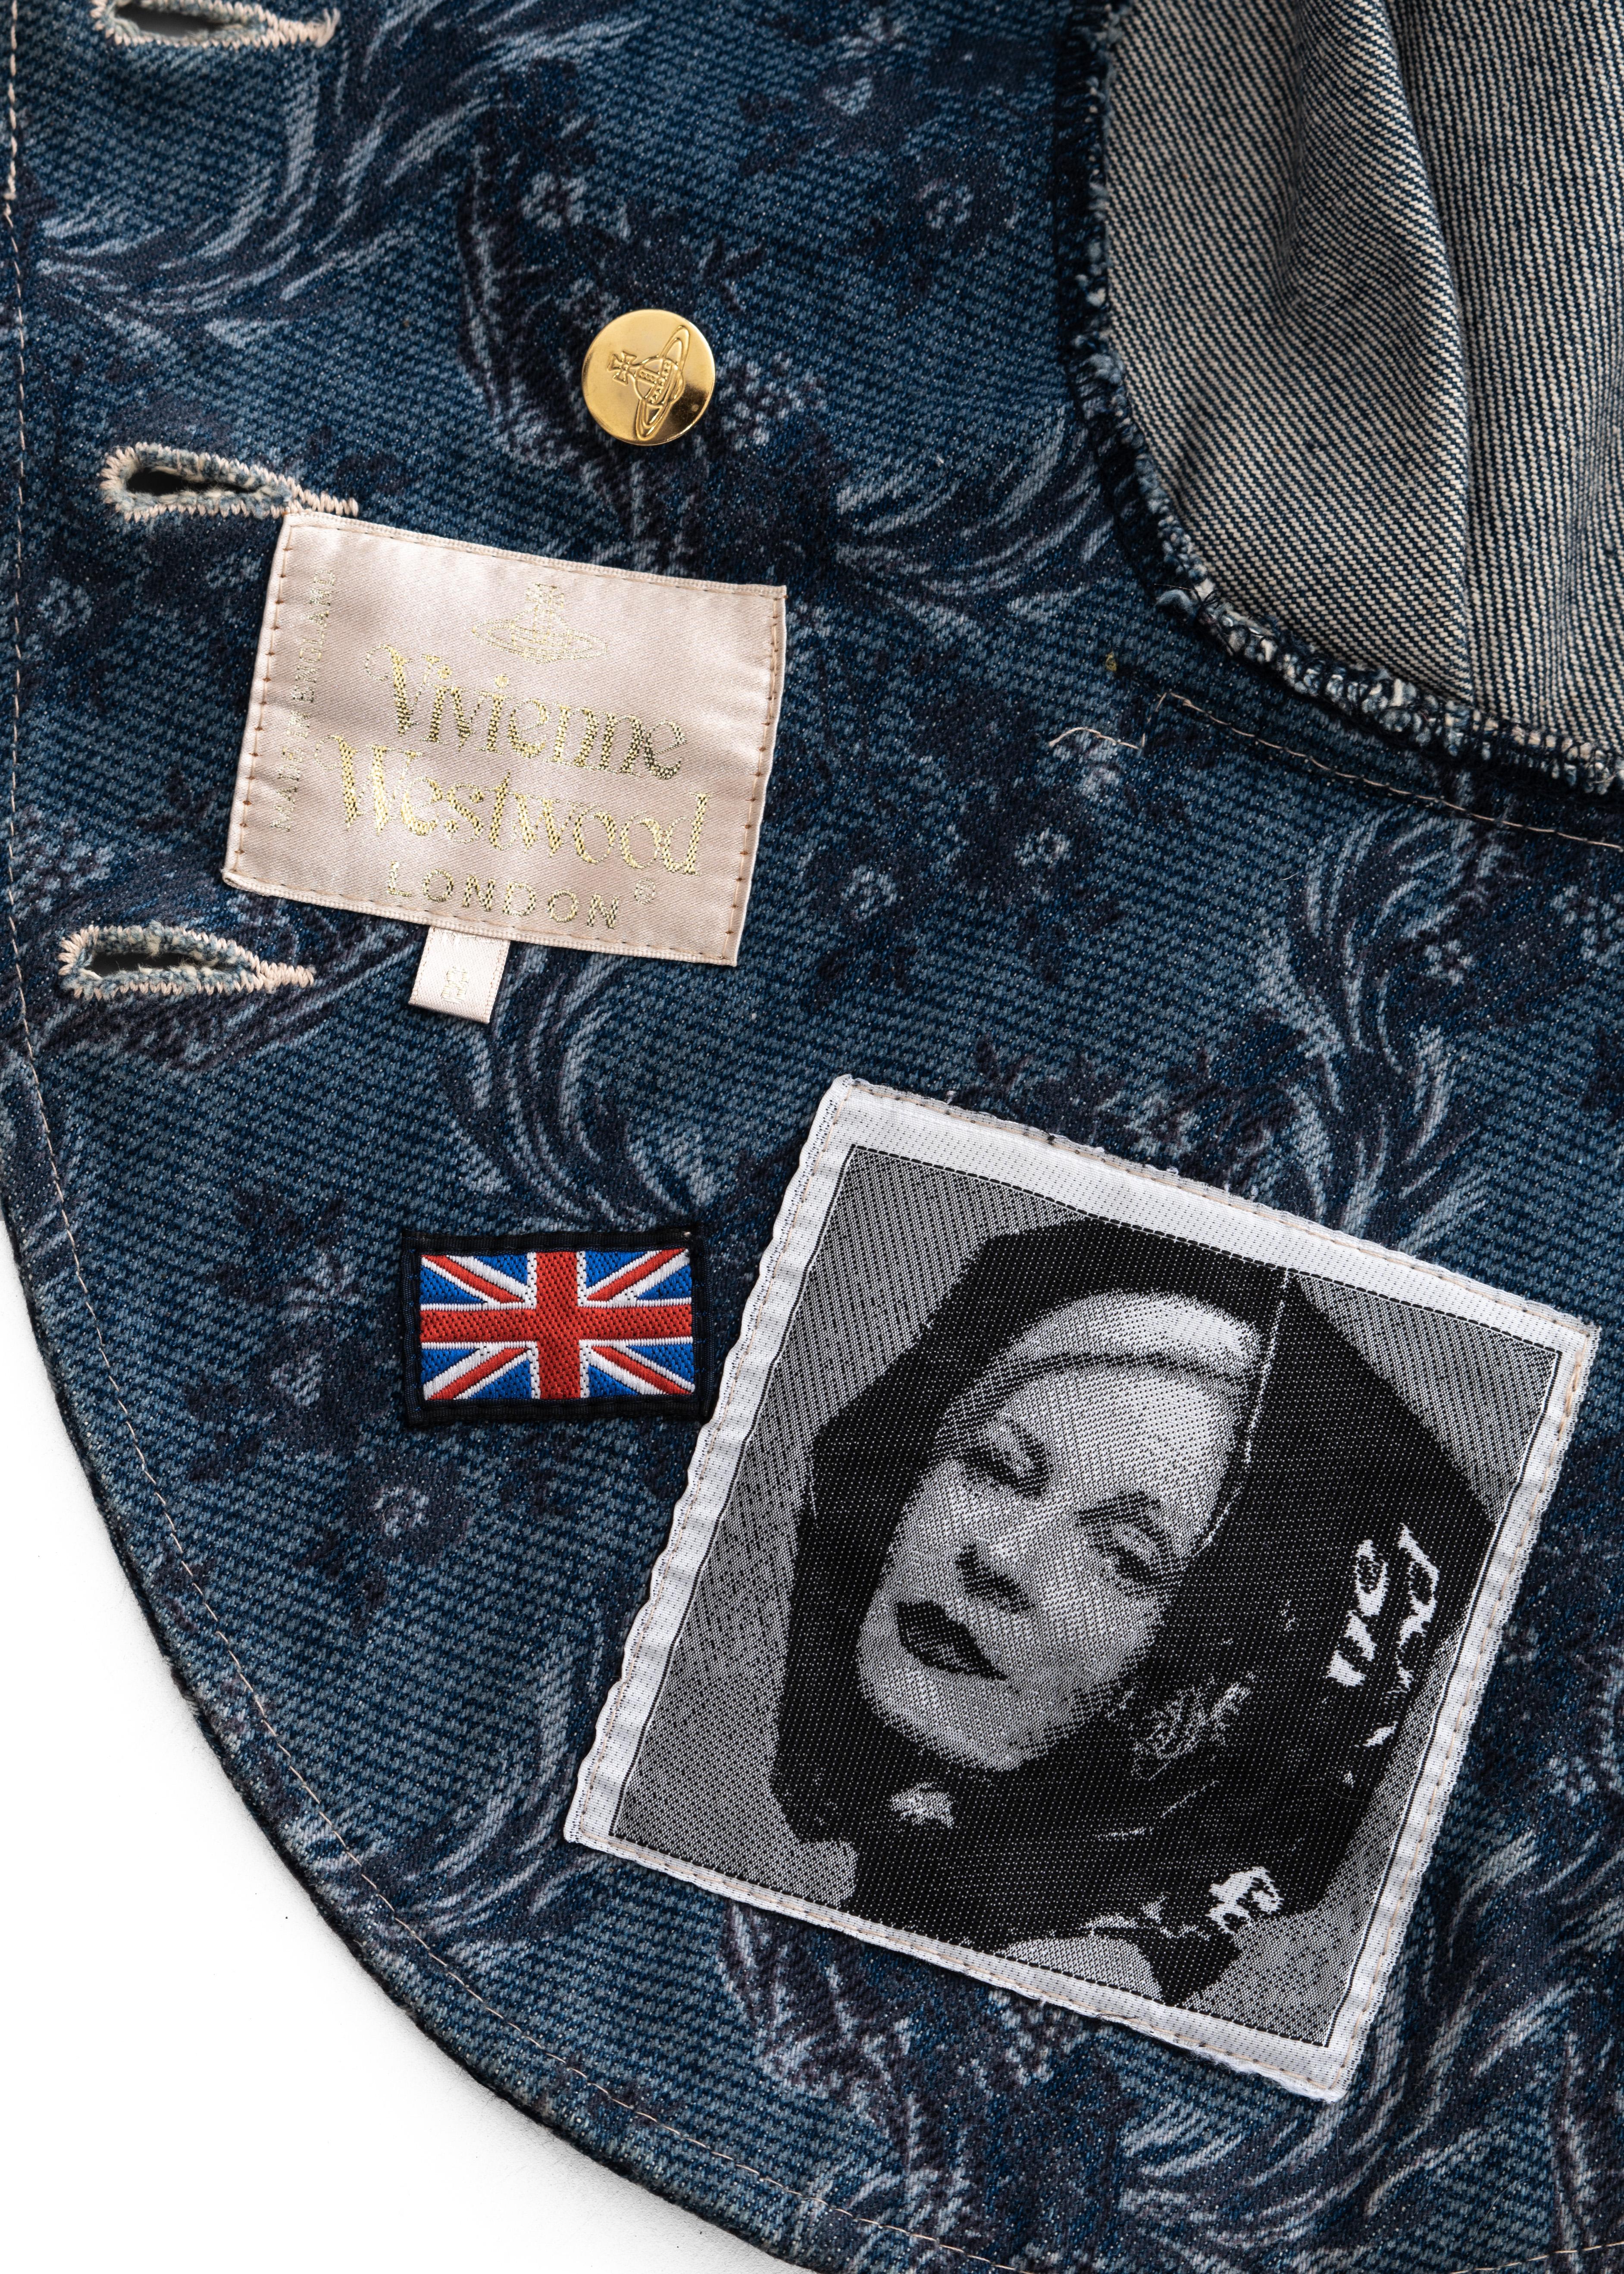 Vivienne Westwood blue denim jacquard peplum jacket skirt suit, fw 1996 For Sale 1